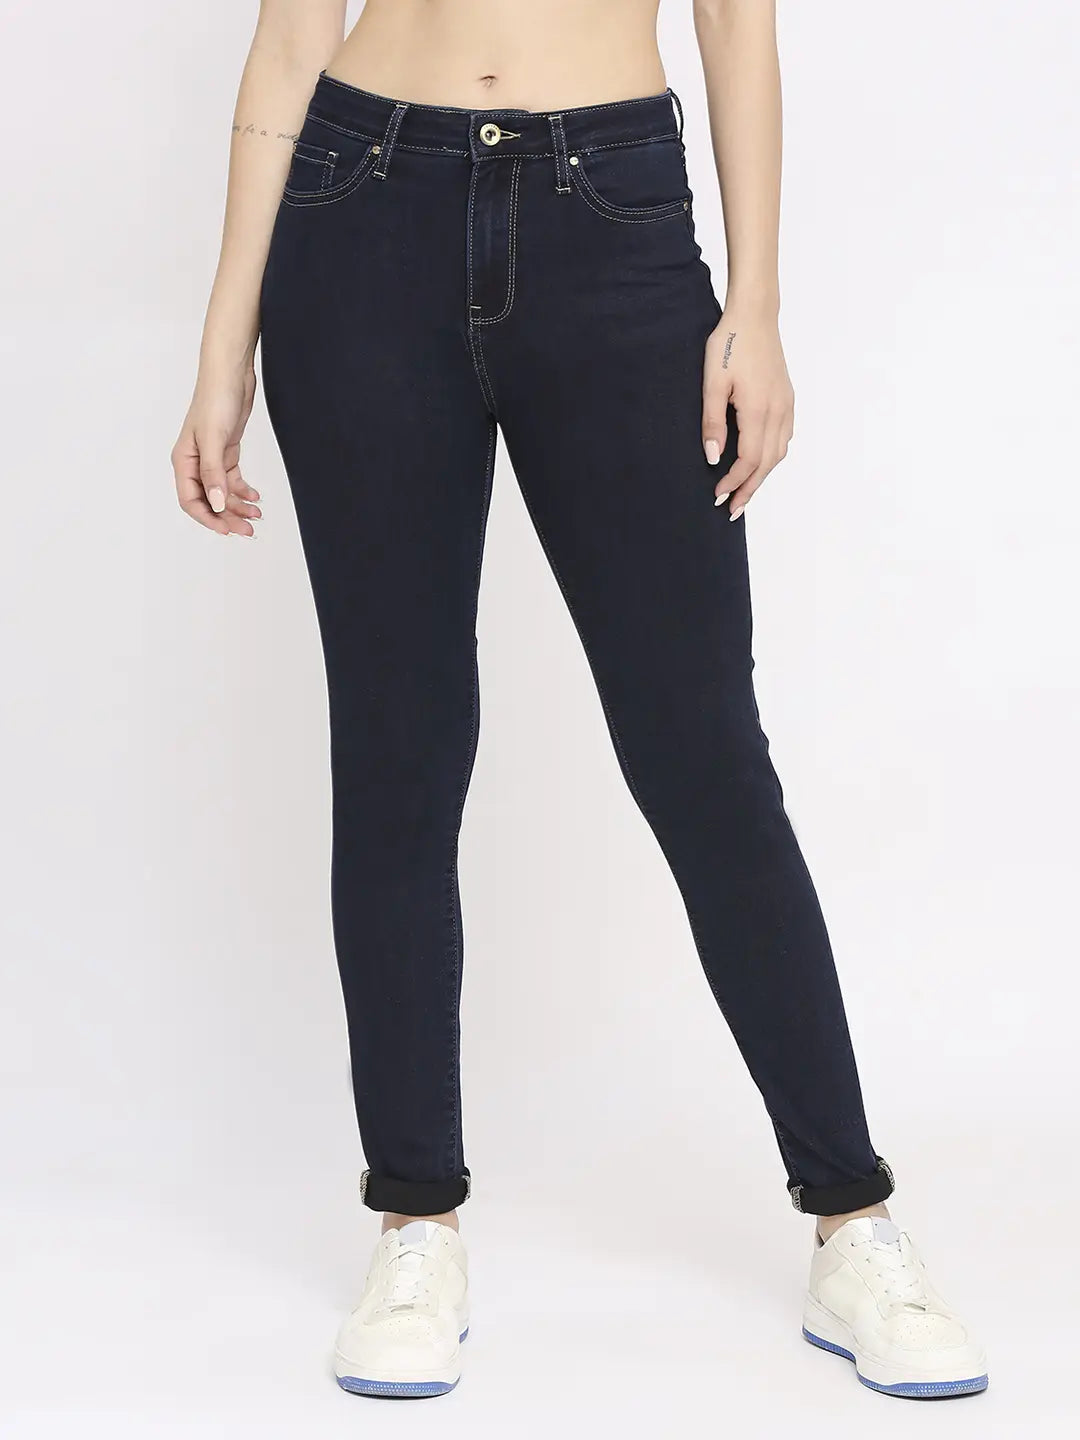 Aggregate 98+ blue colour jeans for ladies